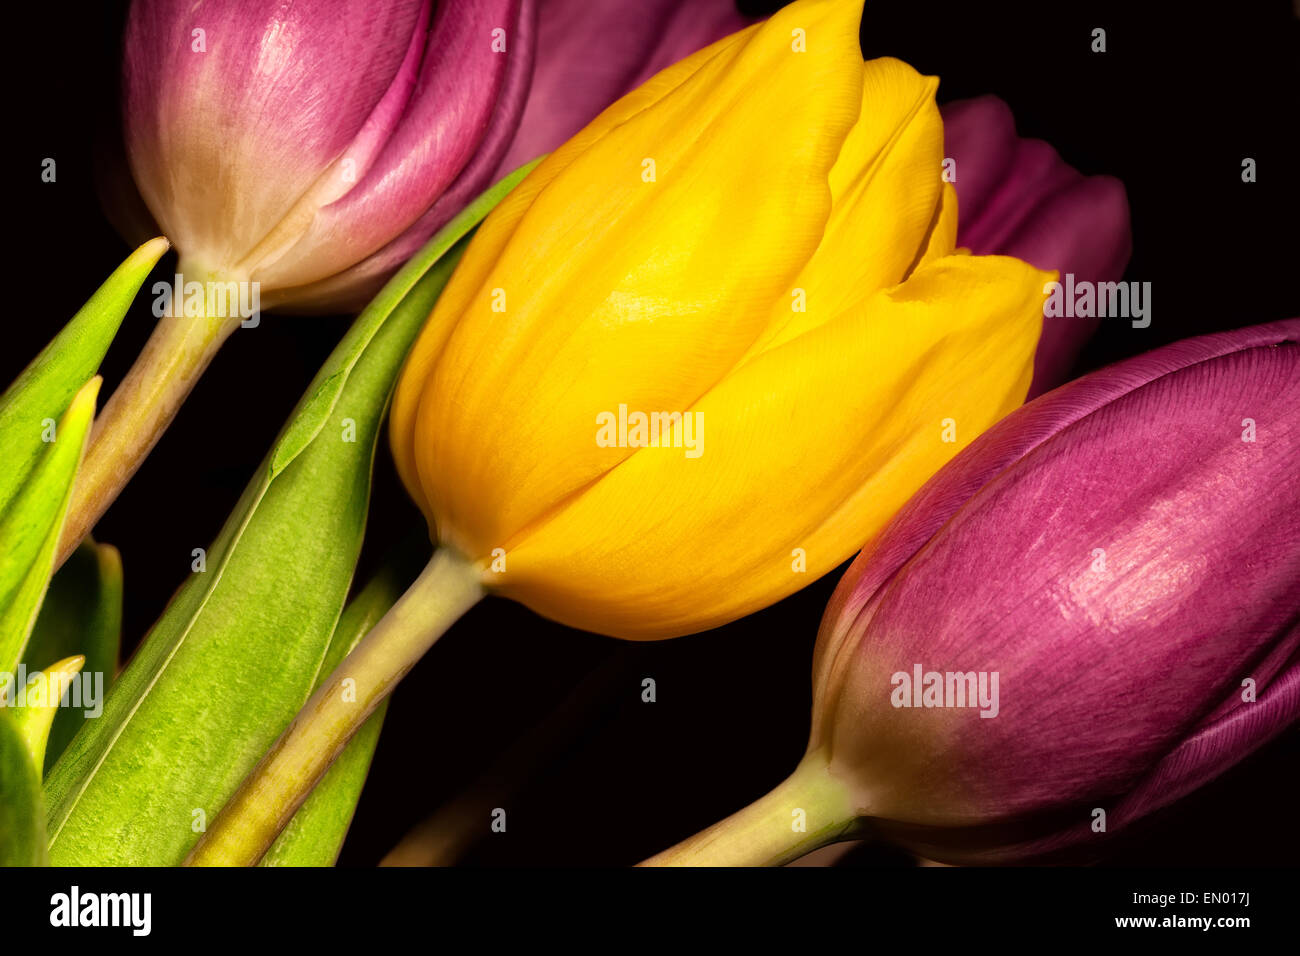 Tulipe jaune unique entouré de tulipes violettes sur fond noir Banque D'Images